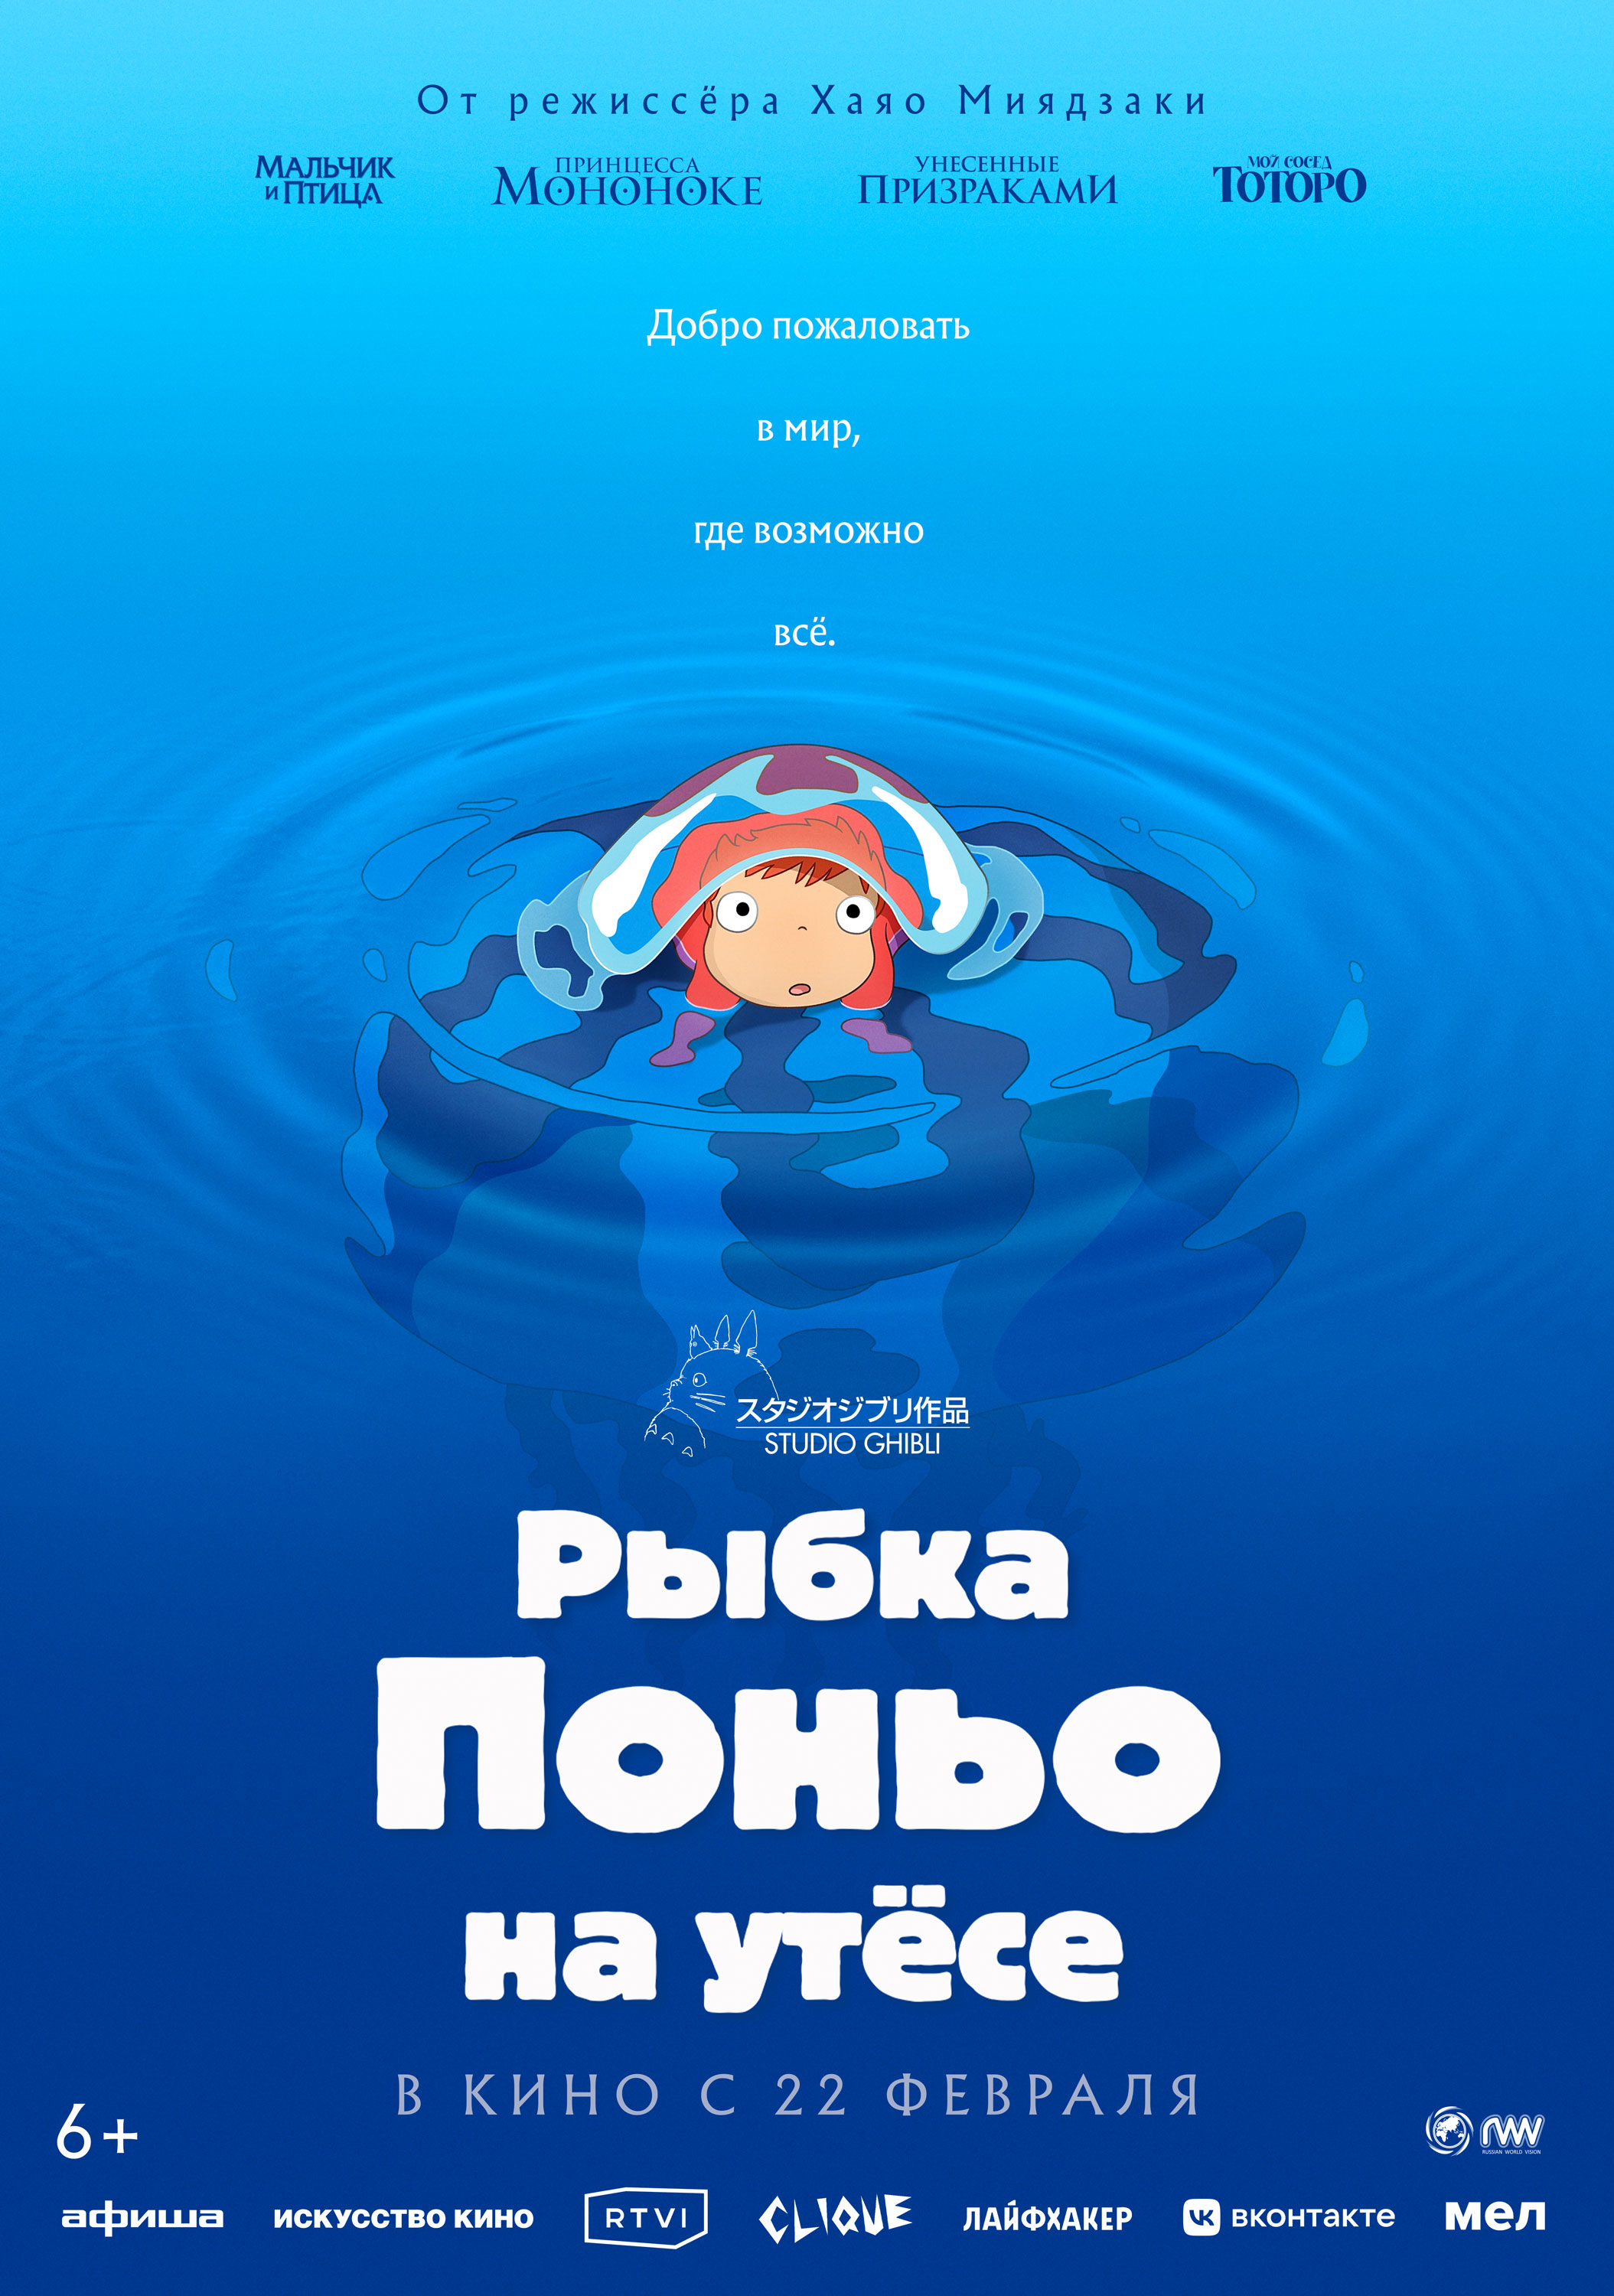 Смотреть фильм Рыбка Поньо на утёсе 2008 года онлайн